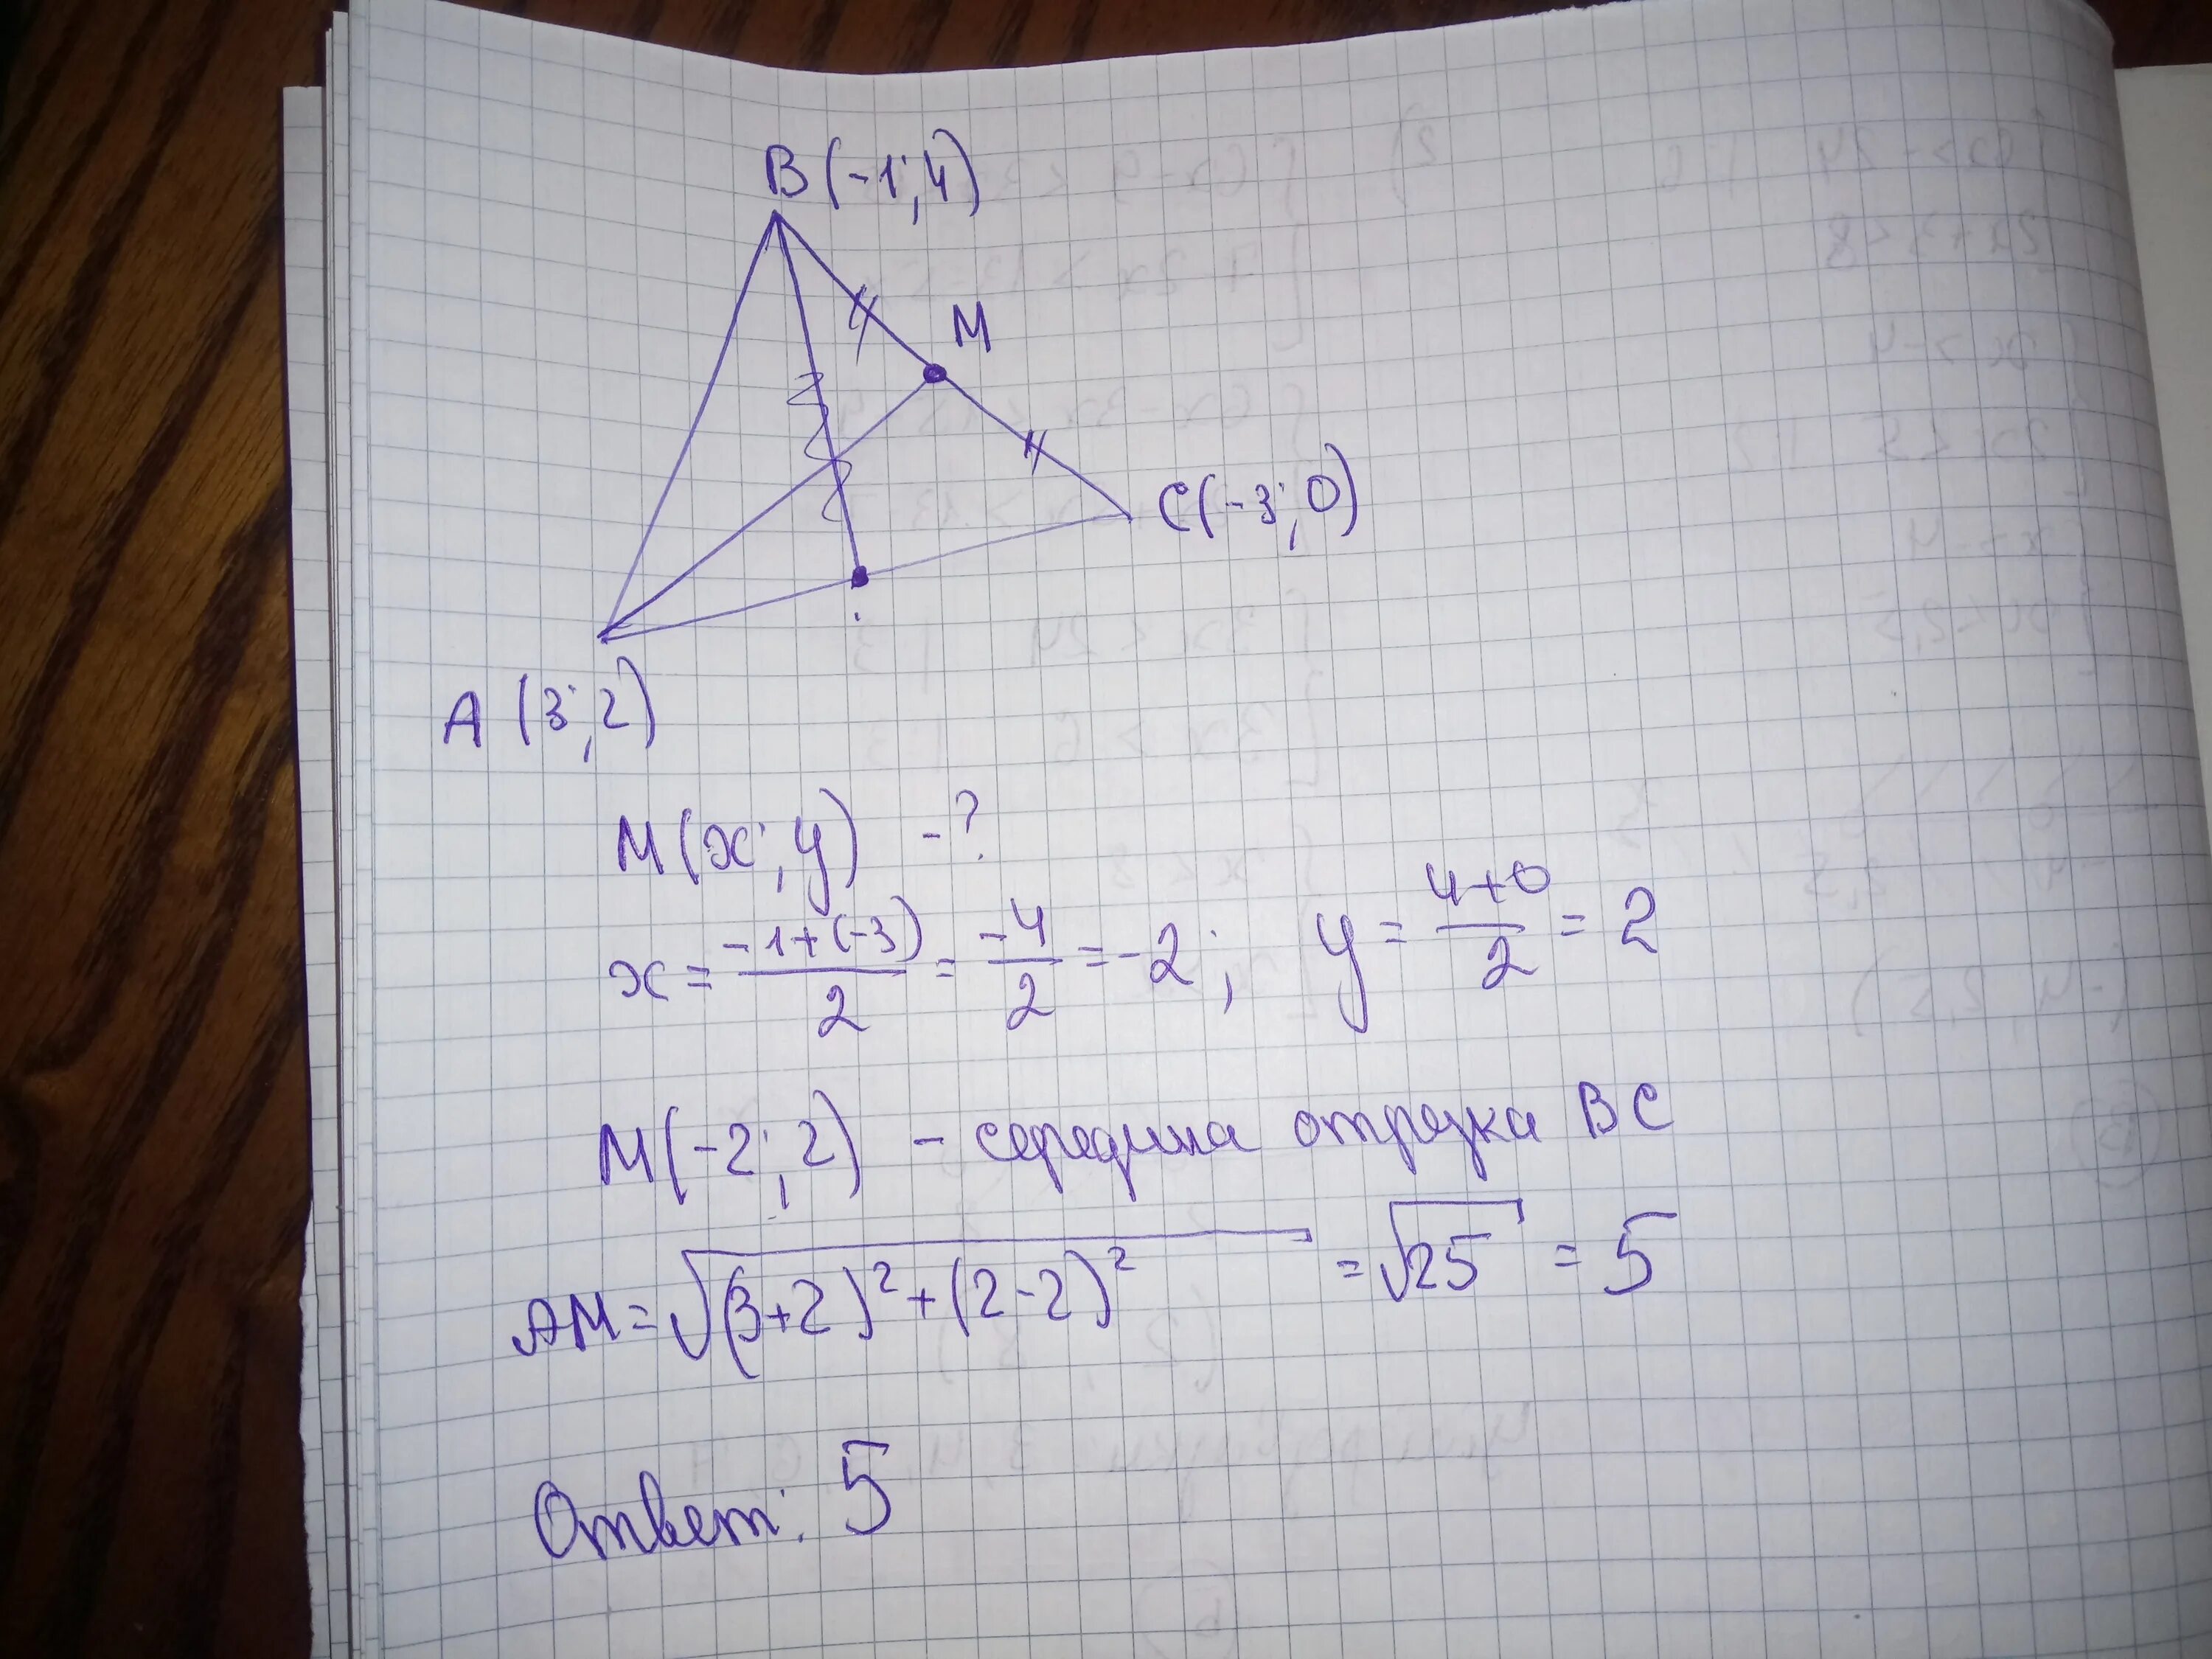 А2 3 в1. Вершины треугольника ABC. Найдите длину Медианы. Вершинами треугольника ABC являются точки а 1 01. Треугольник АБС А-2 3 Б 4 -3 С 1 0.